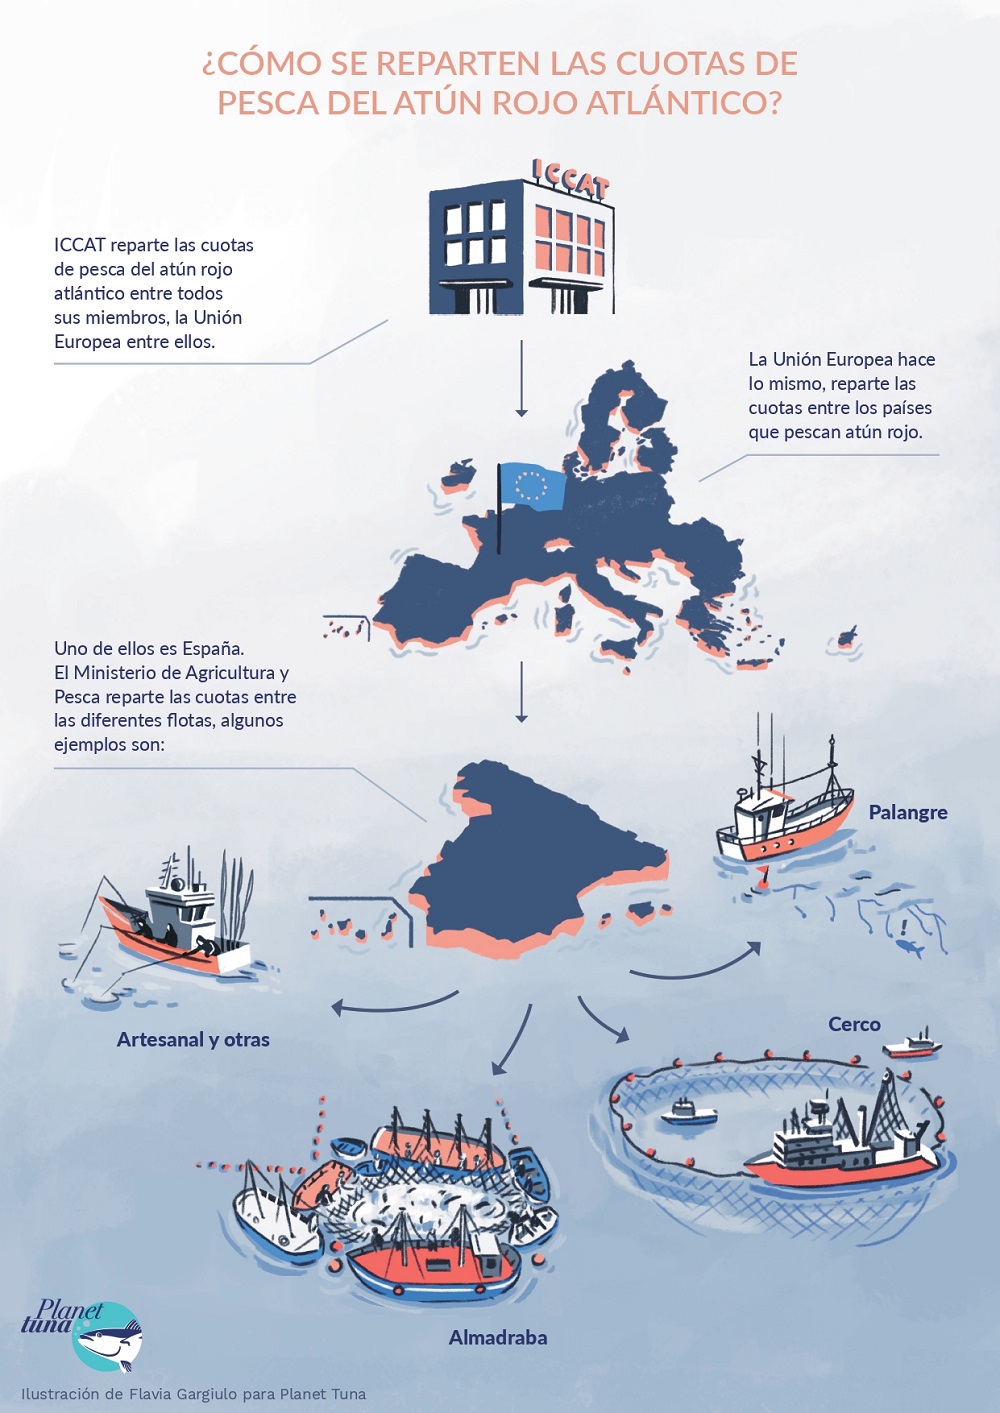 Infografía sobre el repartod e cuotas del atún rojo atlántico en ICCAT